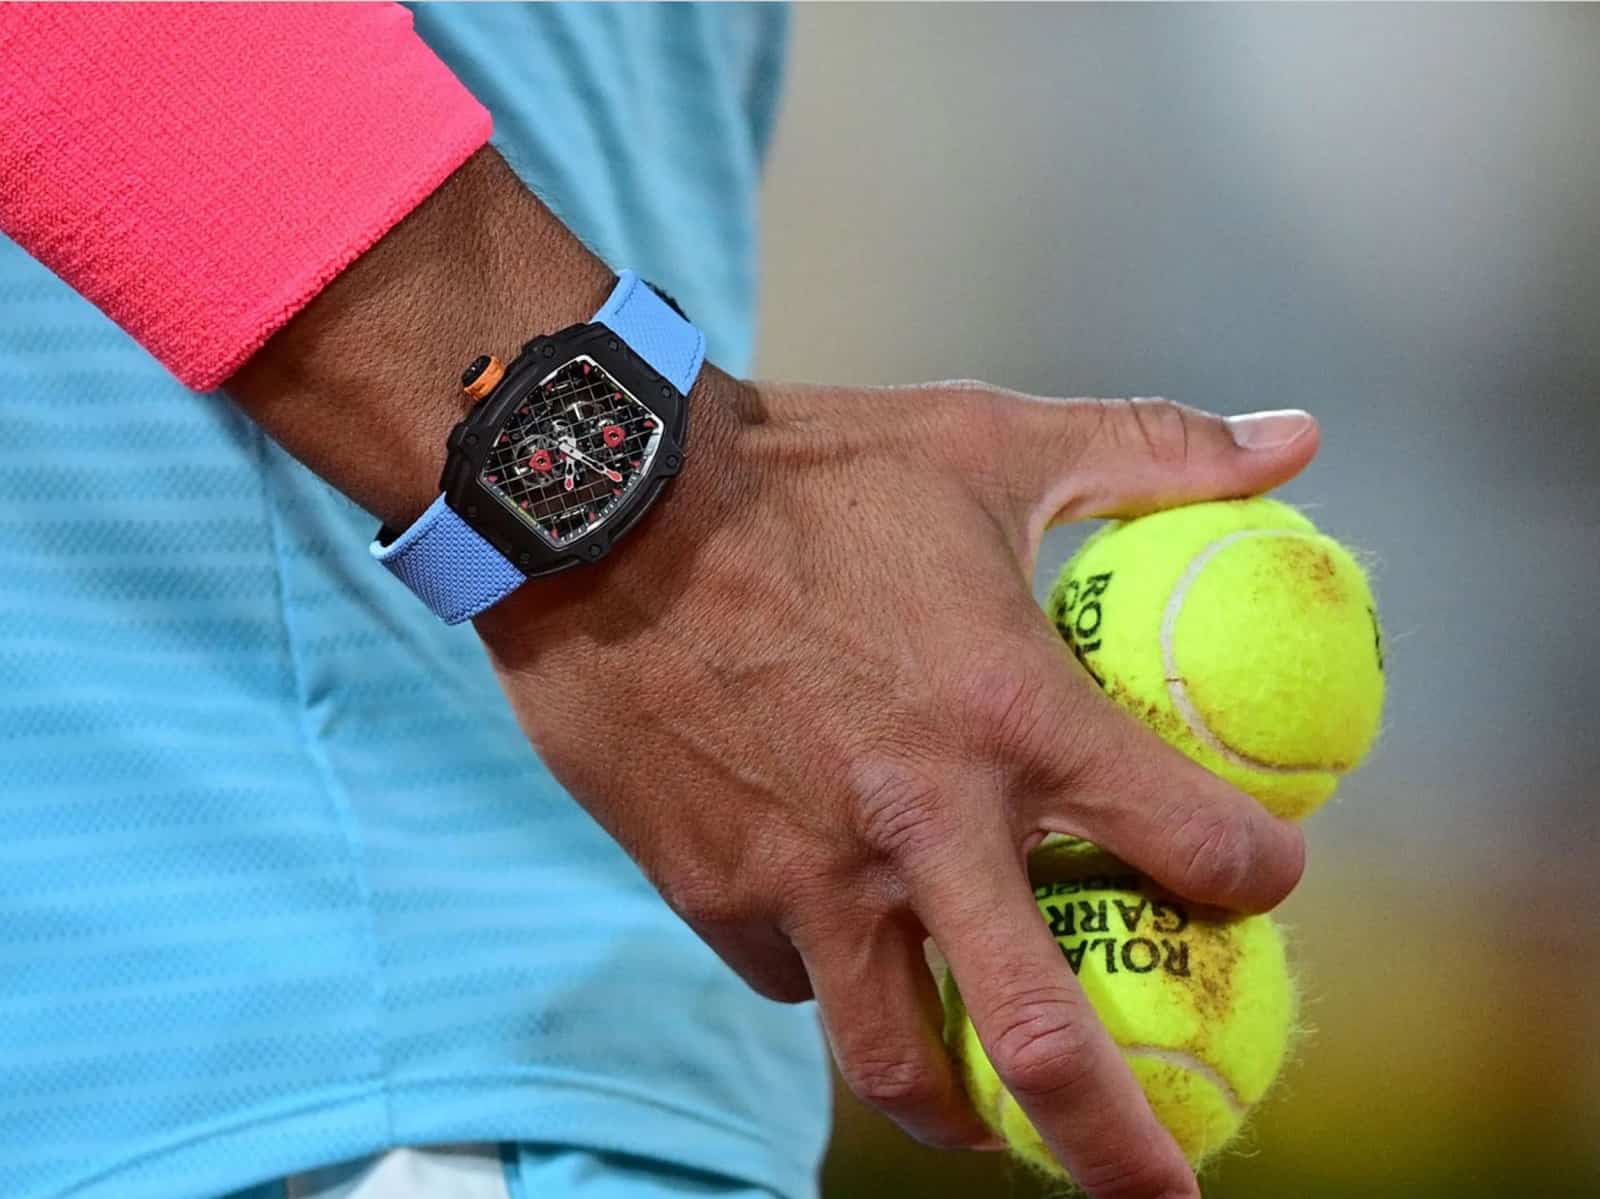 Tennisspieler und ihre Uhren